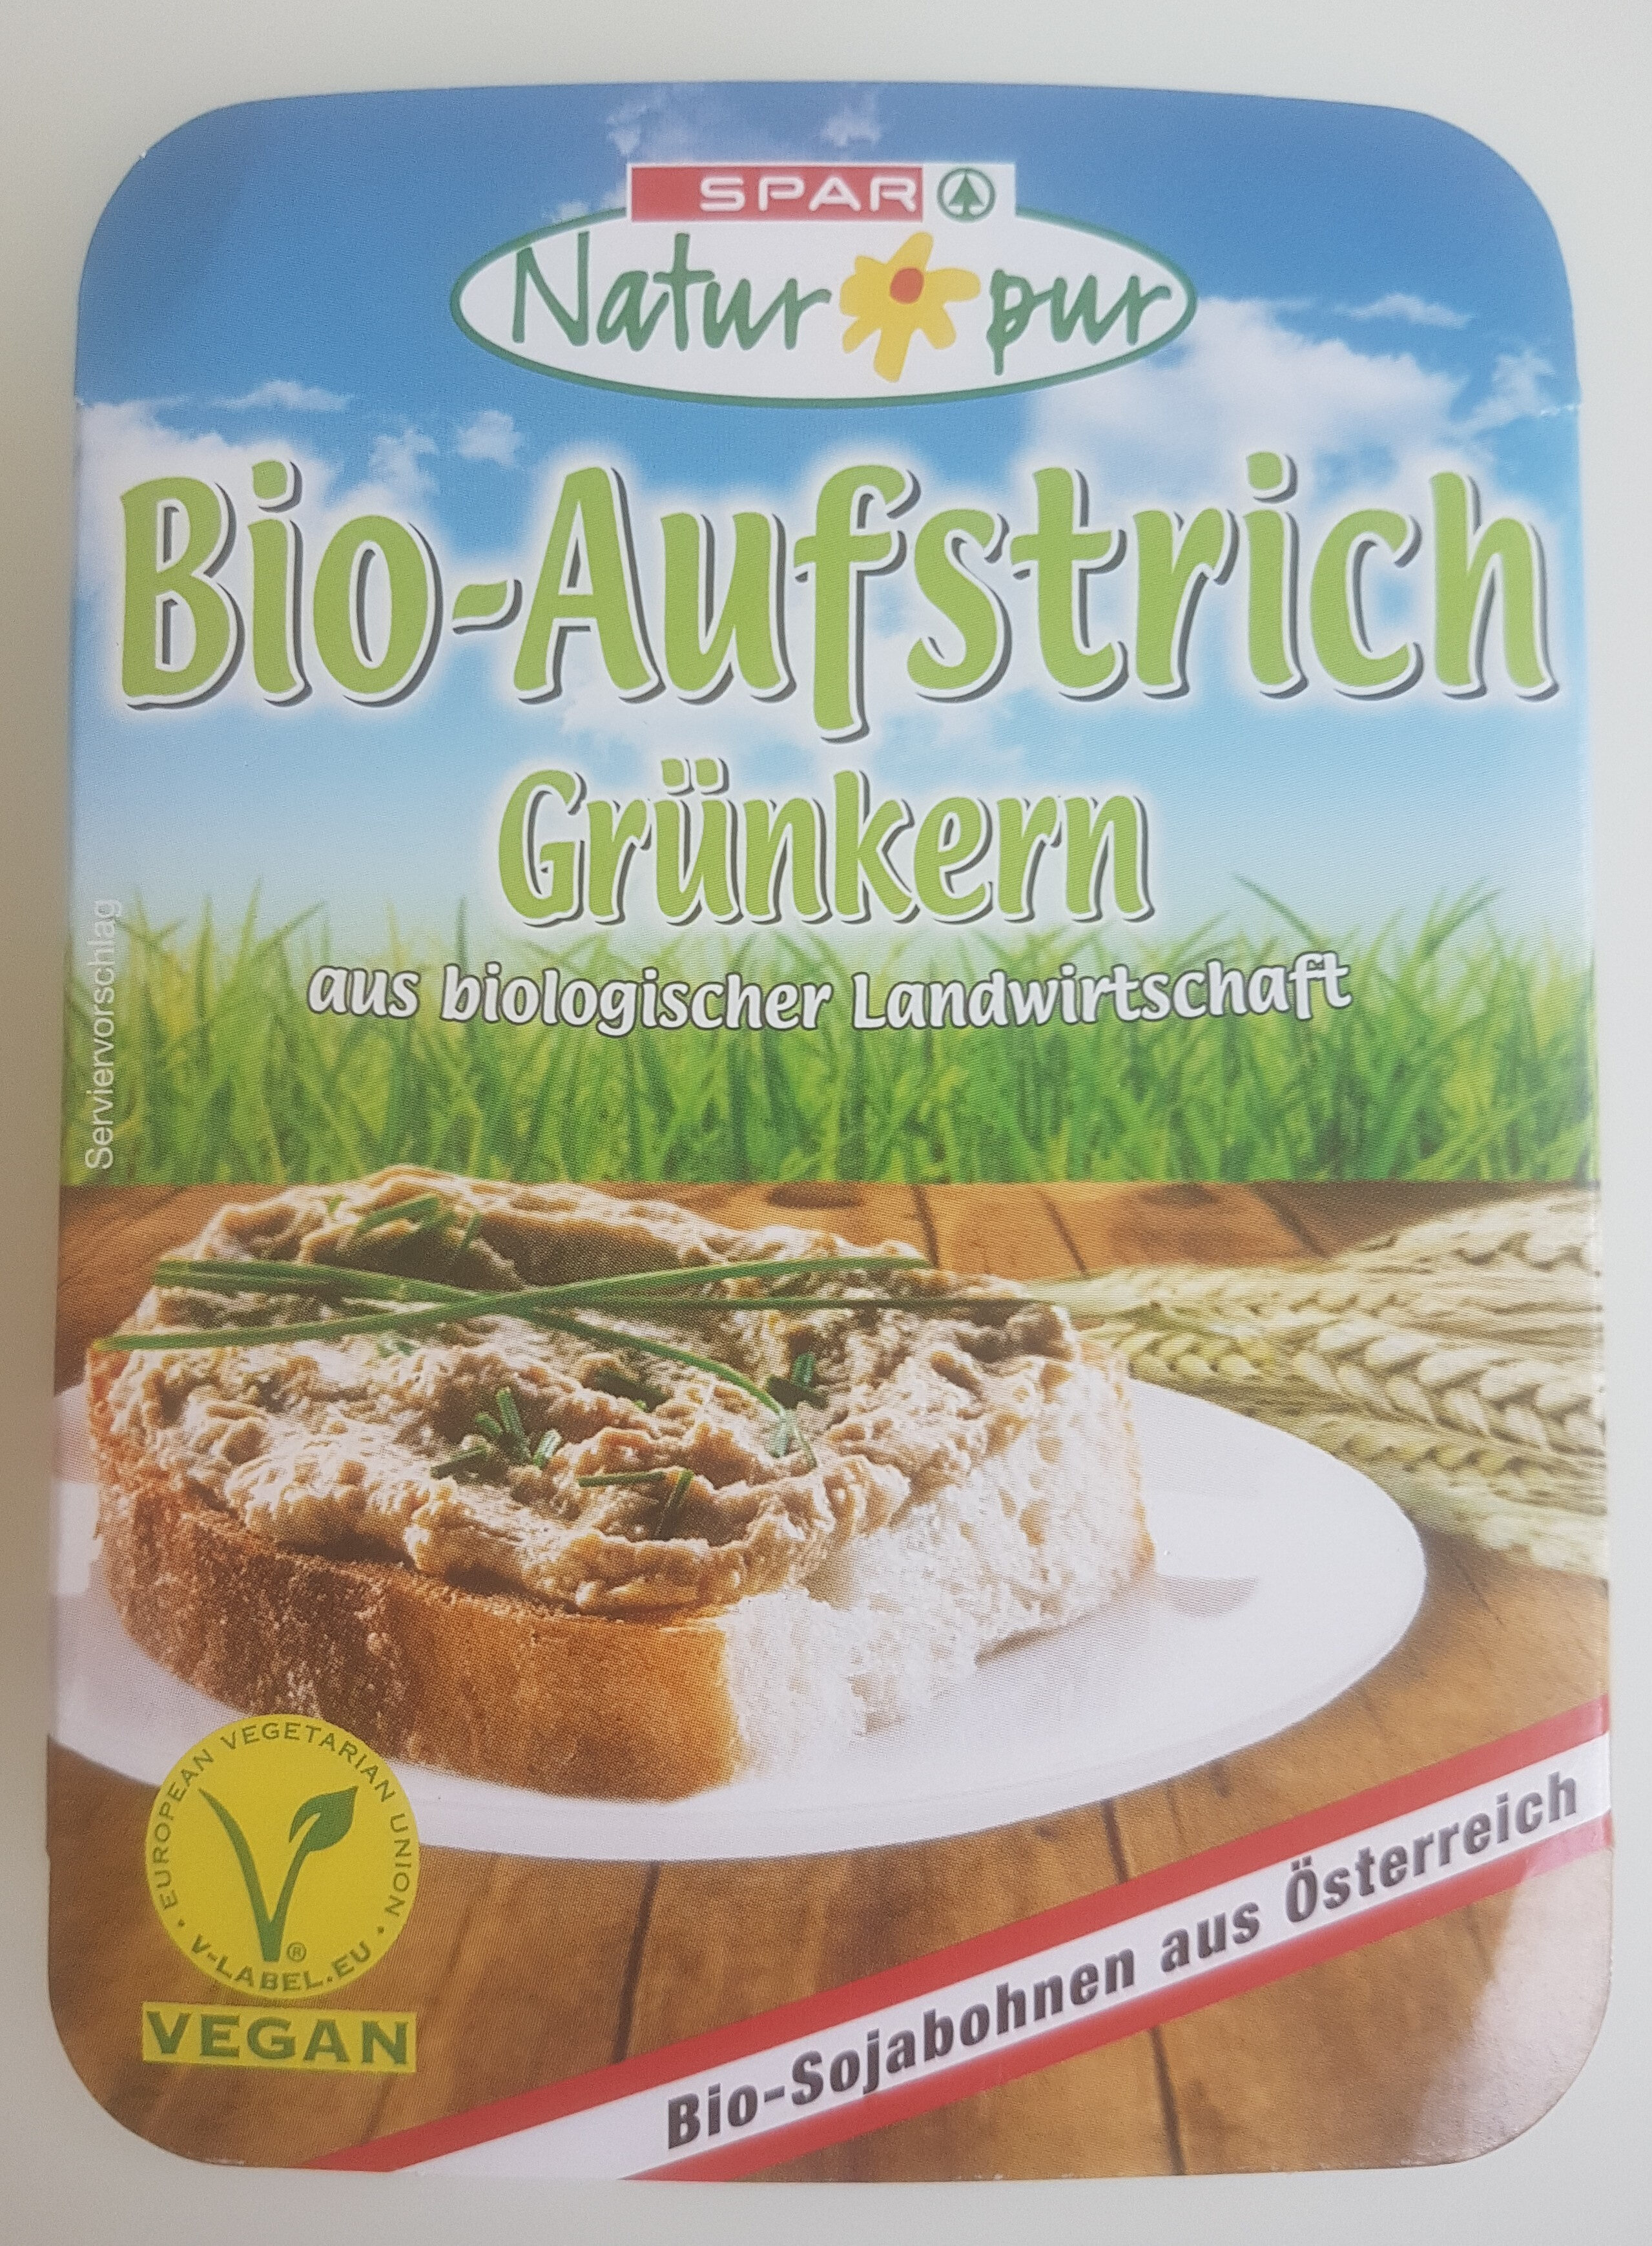 Bio-Aufstrich - Grünkern - Product - de